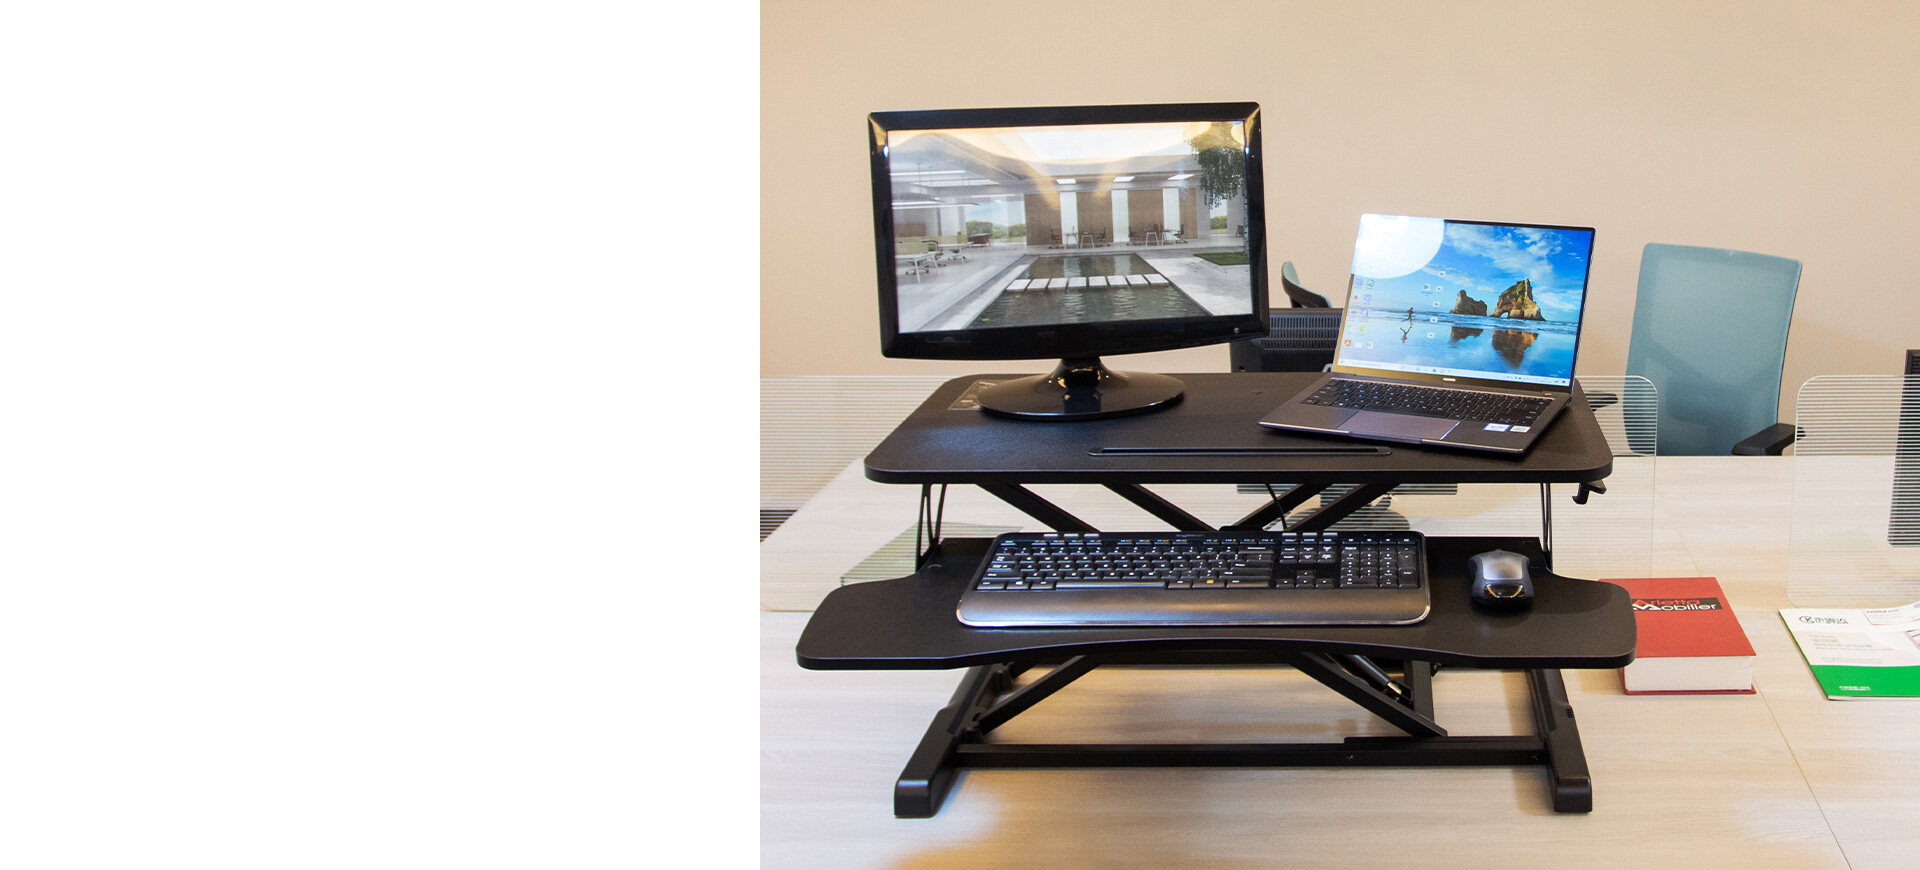 adjustable laptop desk table,adjustable desk table